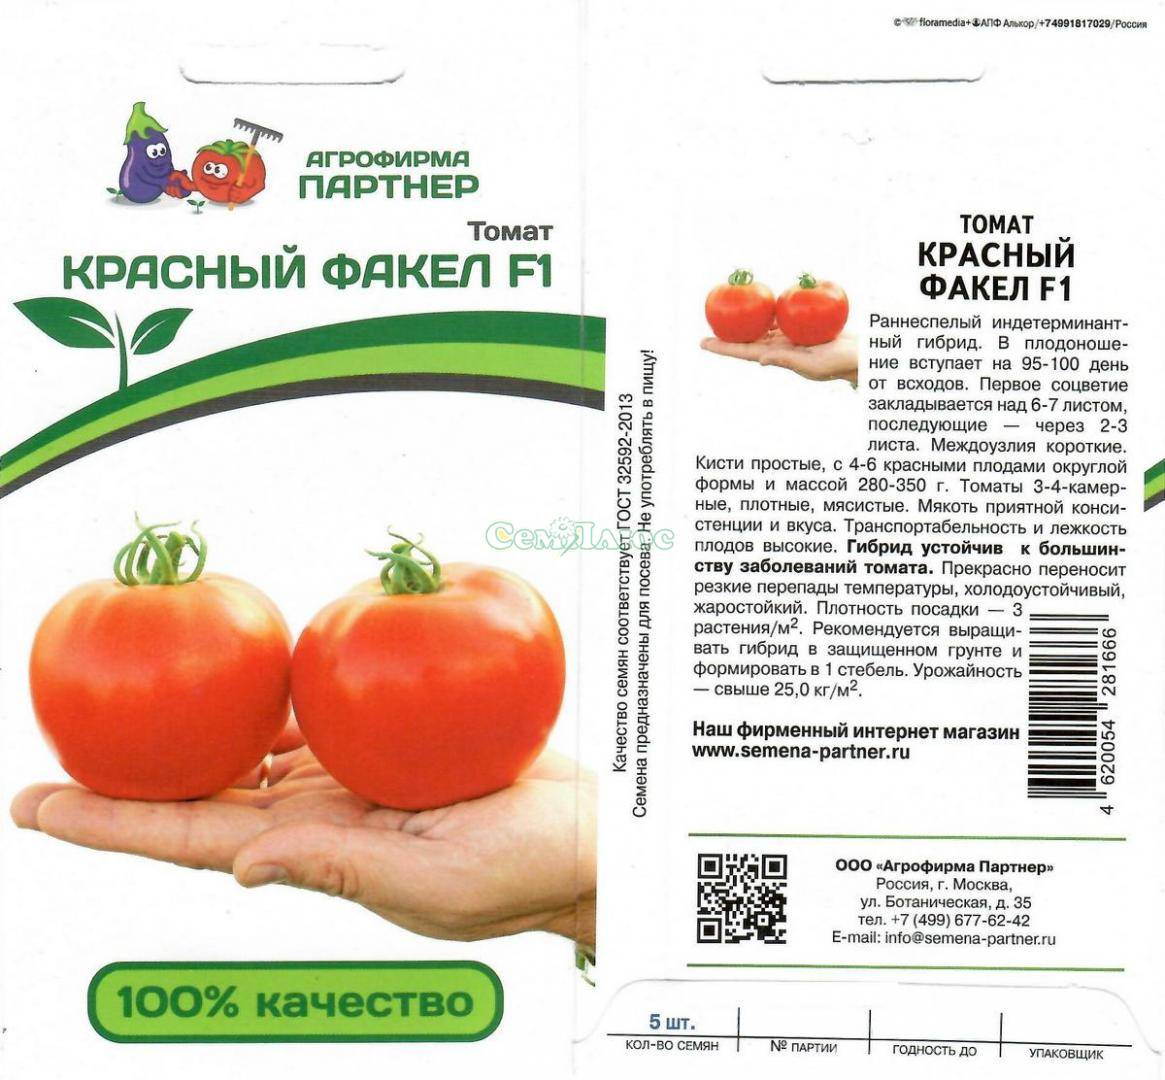 Сорт с аккуратными плодами — томат пламя агро: подробное описание помидоров и характеристики